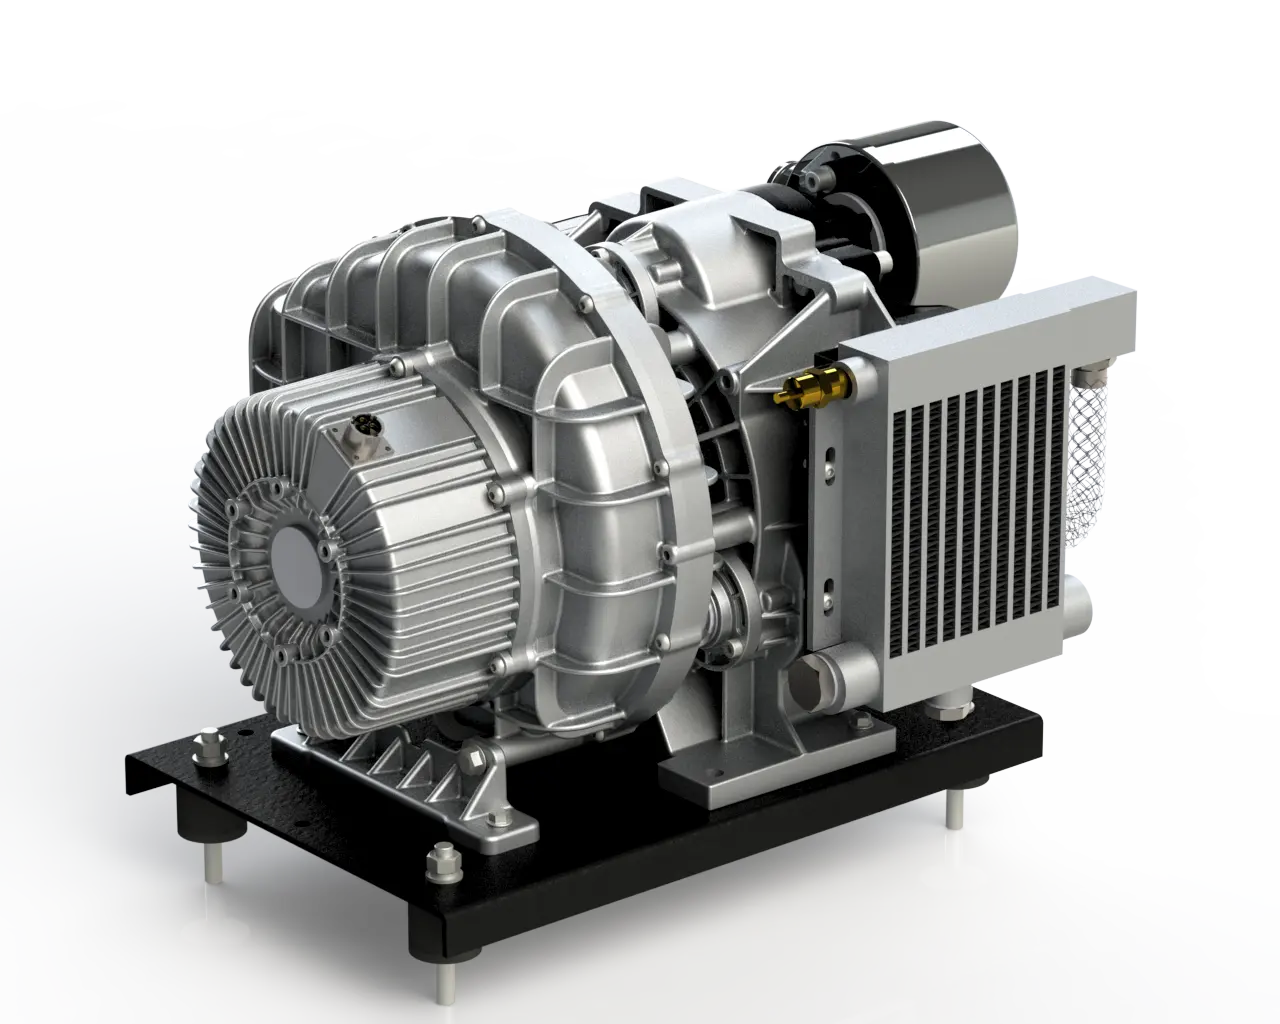 3.7 kW 5 HP en kaliteli pompa sessiz Motor kaydırma elektrikli kafa yağsız hava kompresör pompası fiyat sabit alüminyum